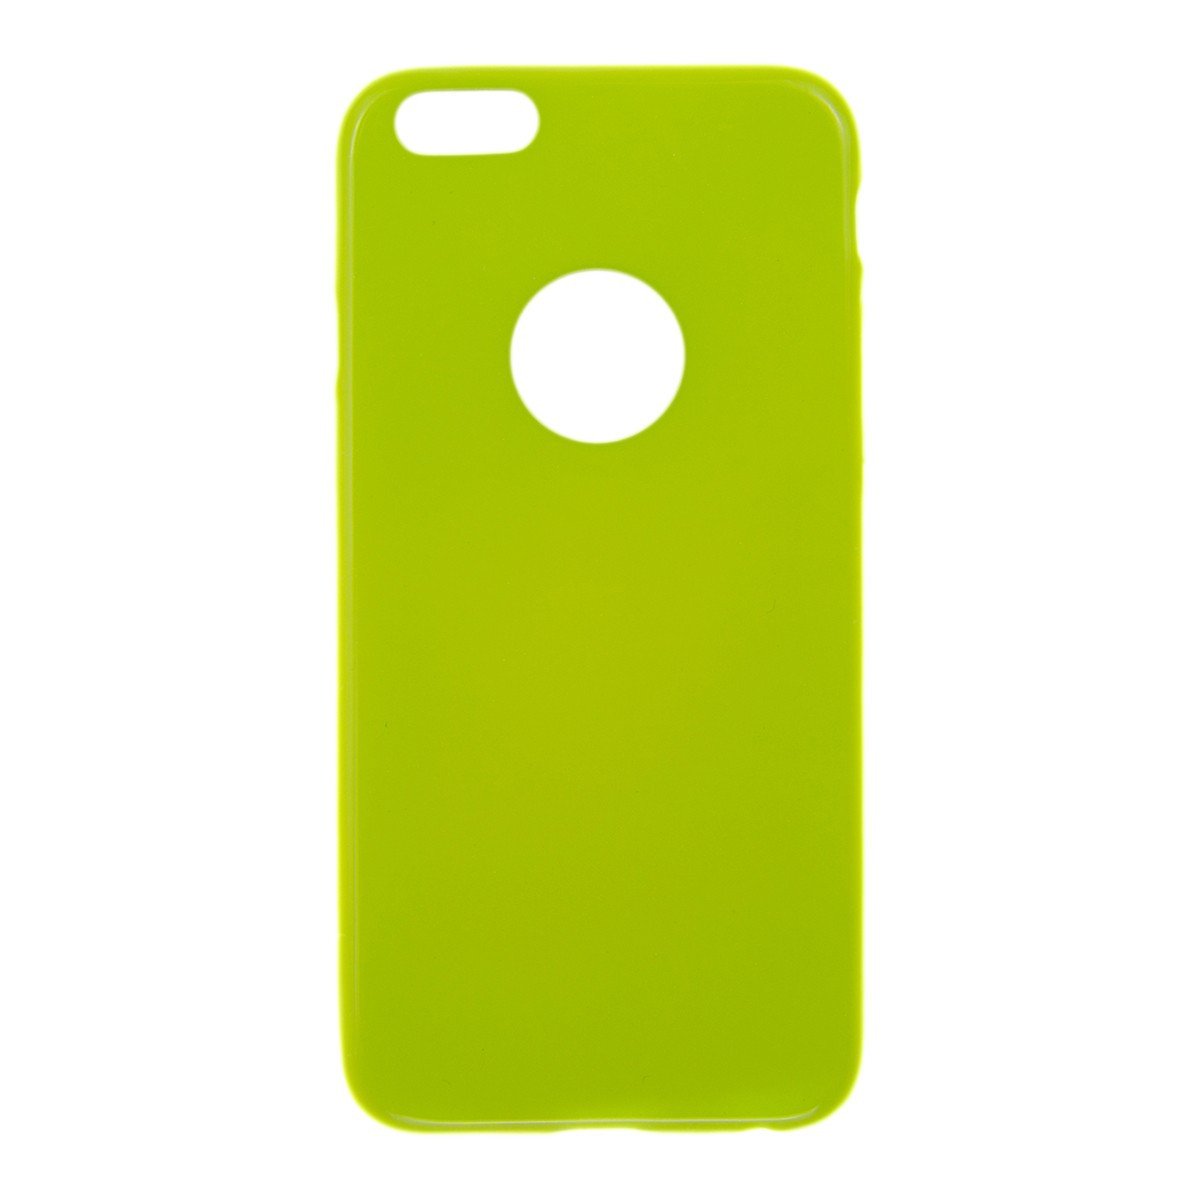 Θηκη TPU Jelly UV - iPhone 5/5s/SE - Lime - iThinksmart.gr